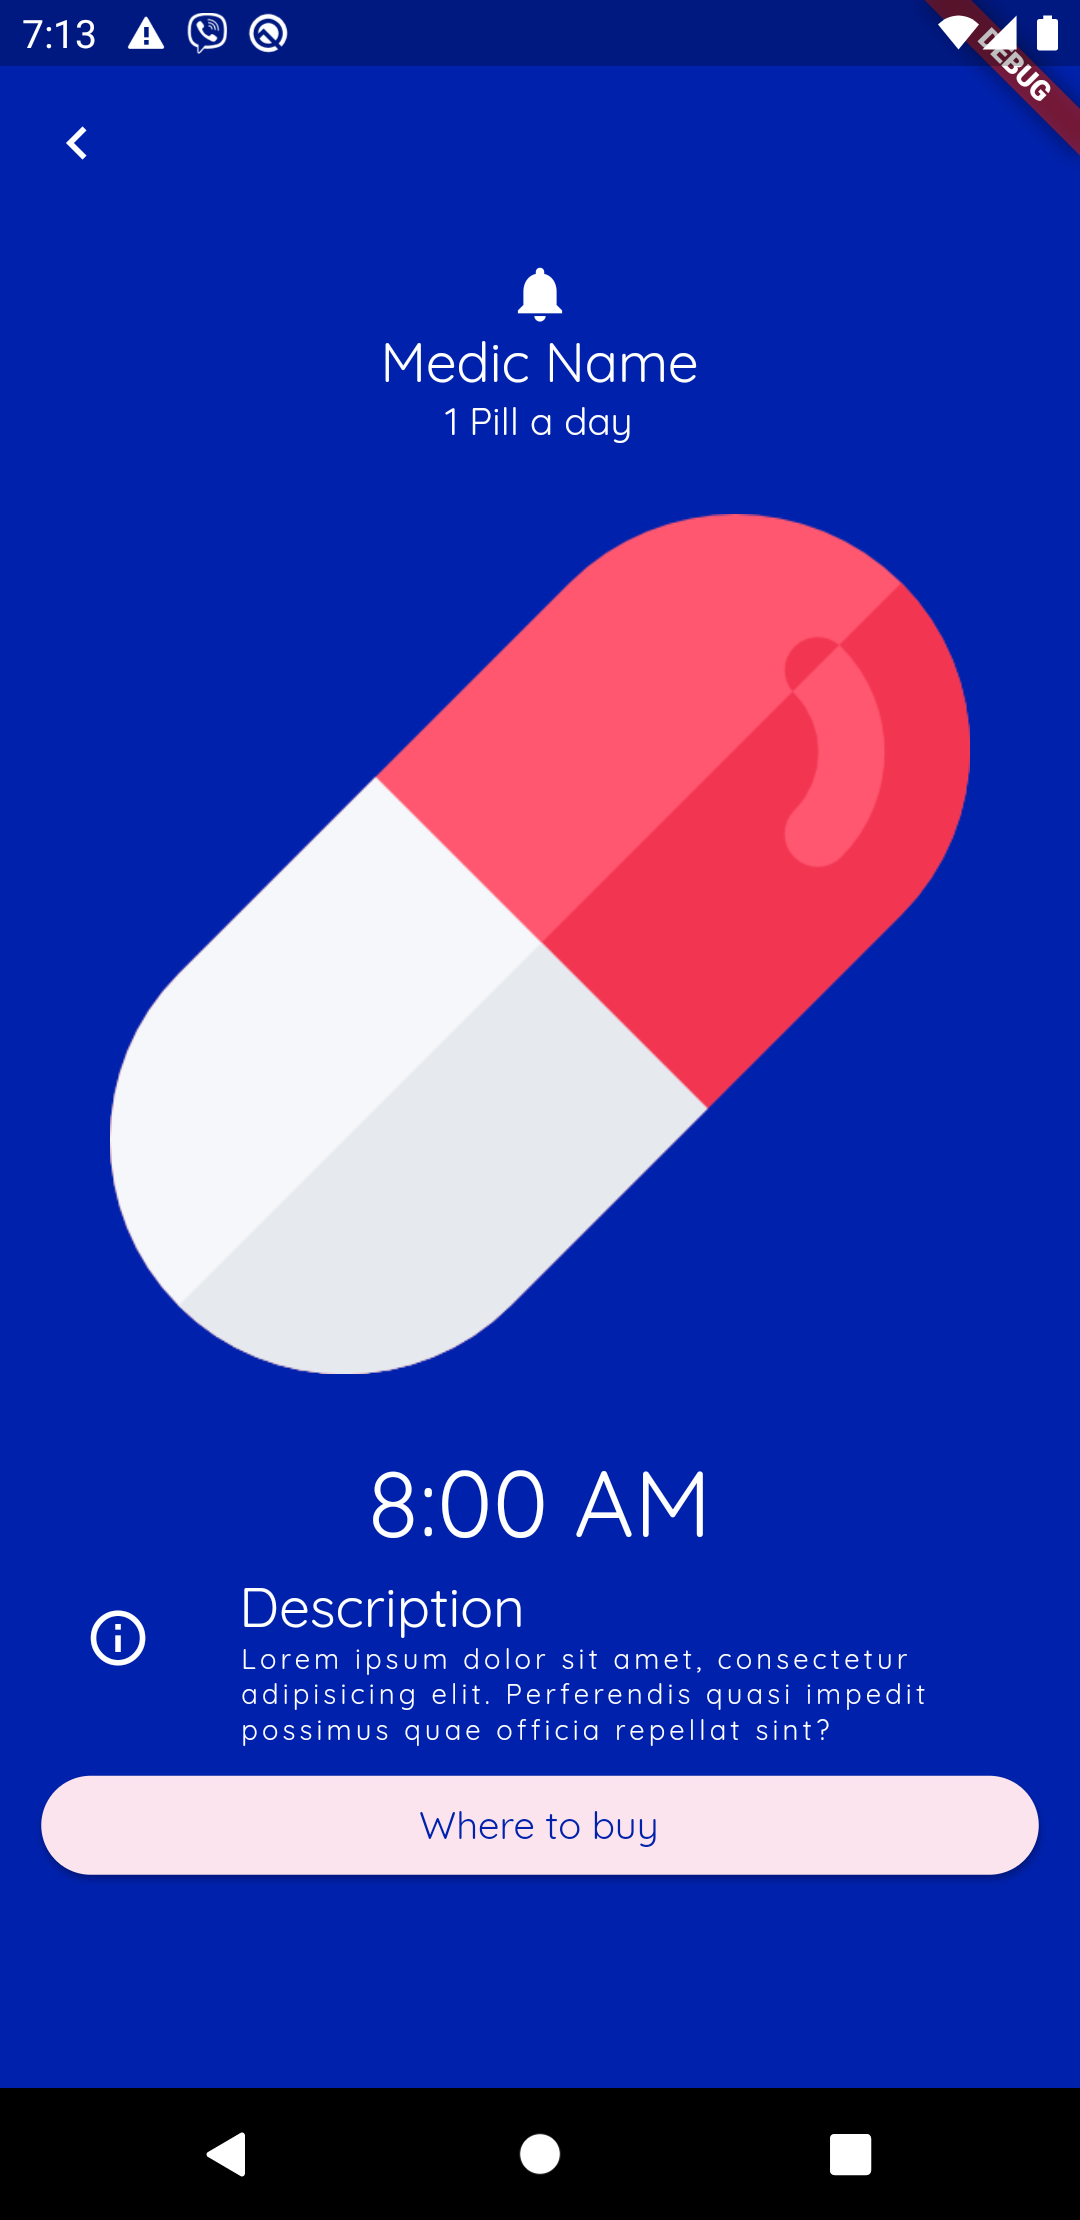 A pharmacy app built using flutter